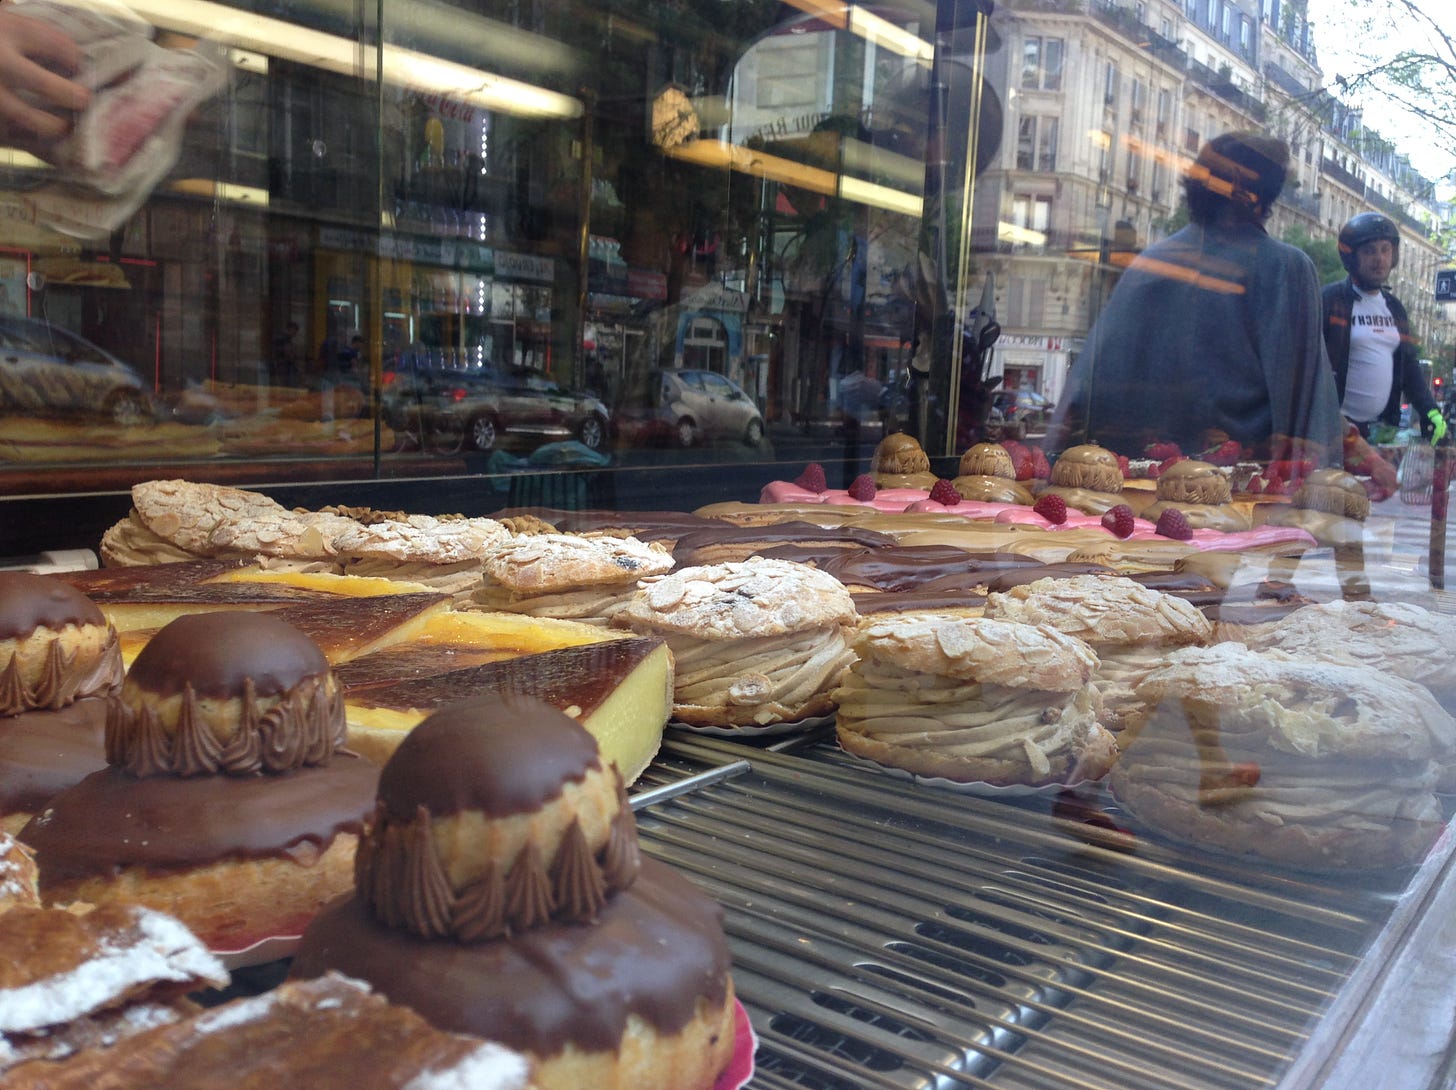 A imagem mostra a vitrine de uma padaria francesa repleta de doces da confeitaria local. No vidro é possível ver o reflexo de pedestres.